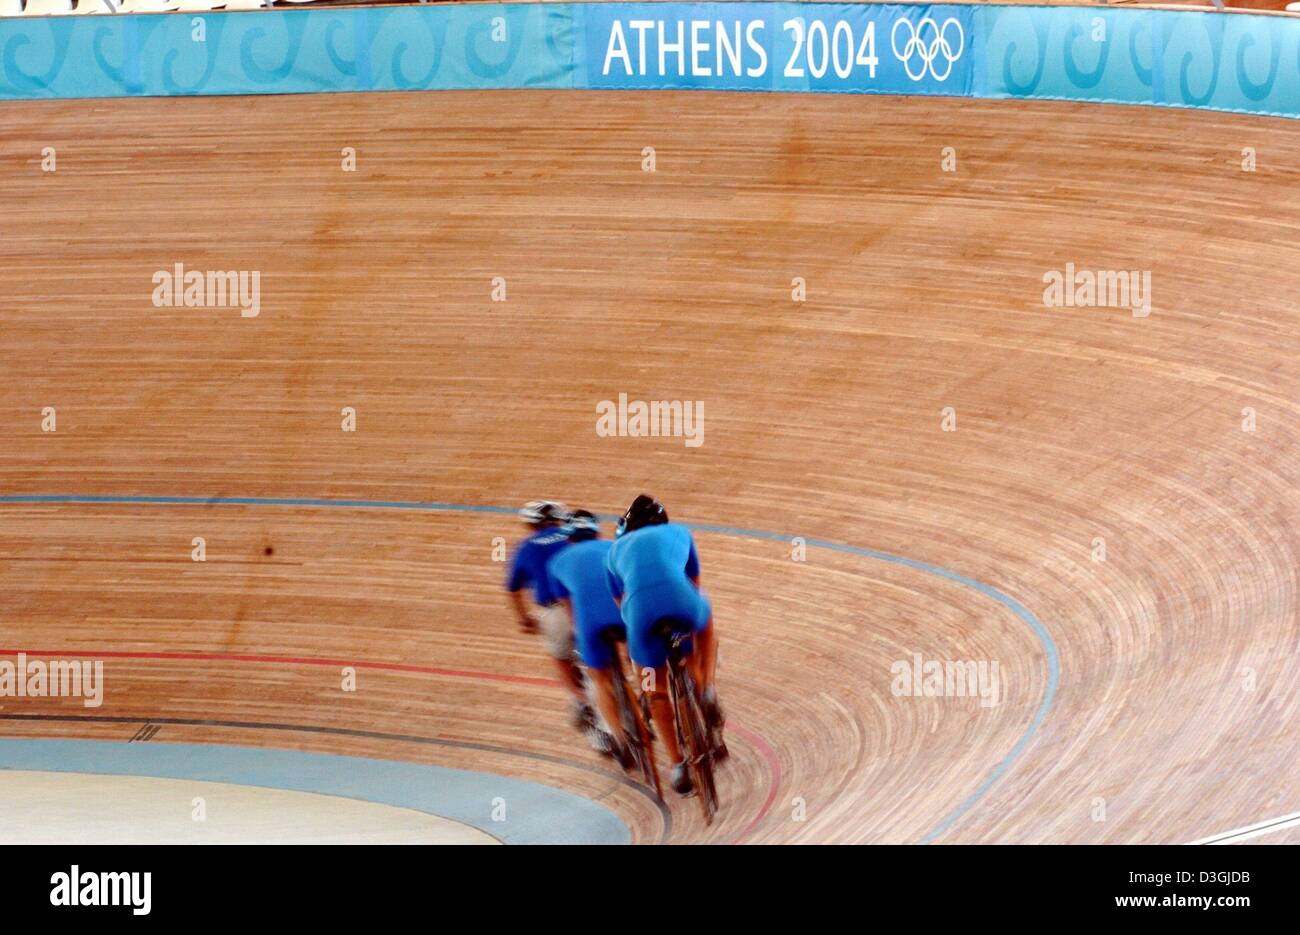 (Dpa) Greco non identificato i ciclisti cylcle in un pre gara olimpica sulla pista in legno del velodromo olimpico di Atene del 07 agosto 2004, tra il 13 e 29 agosto la XXVIII Giochi Olimpici si svolgerà nella capitale Greca. Foto Stock